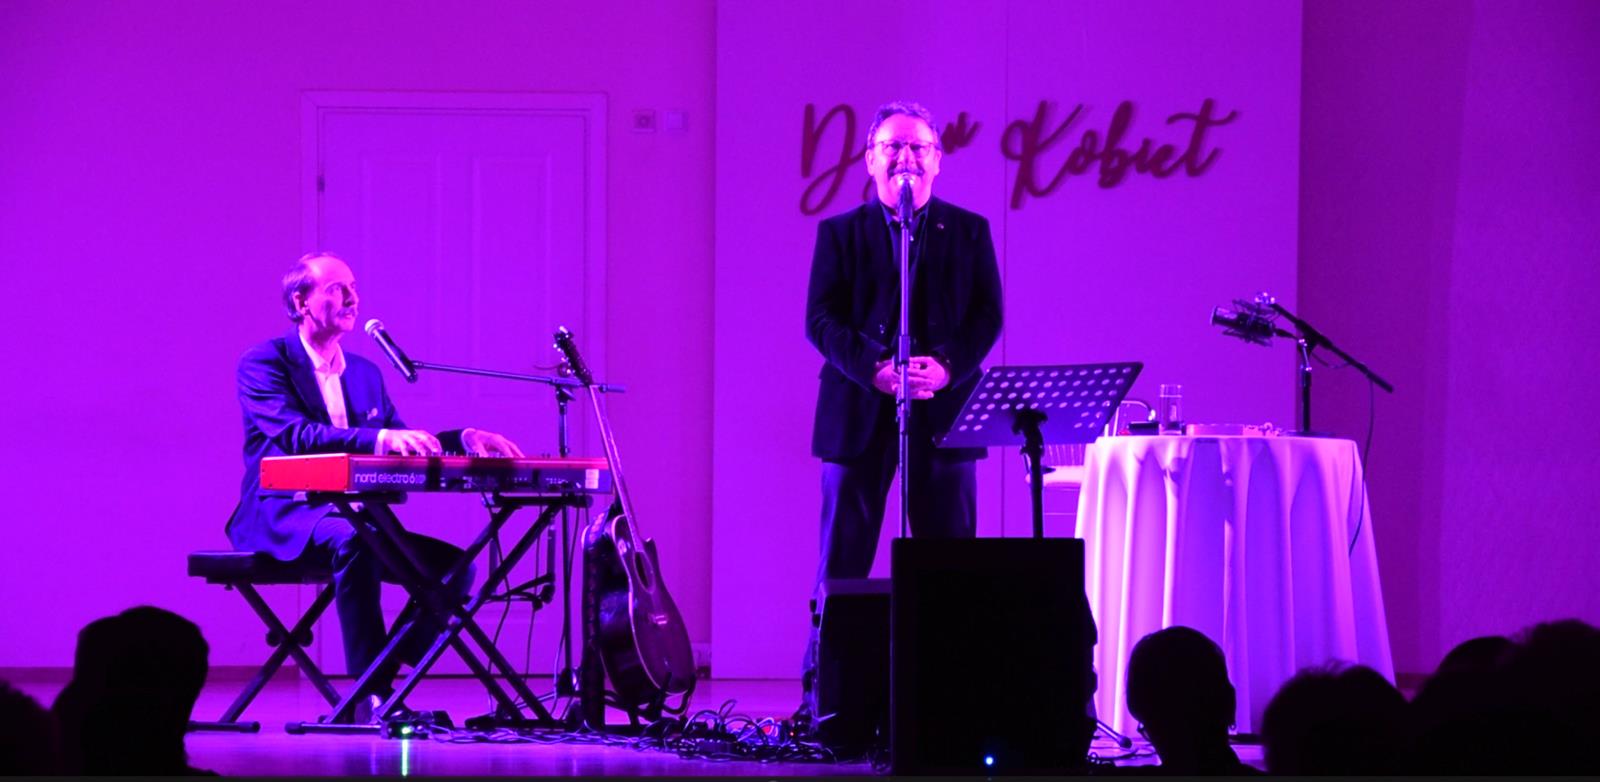 zdjęcie Zbigniewa Zamachowskiego przy mikrofonie oraz Romana Hudaszka przy instrumencie klawiszowym